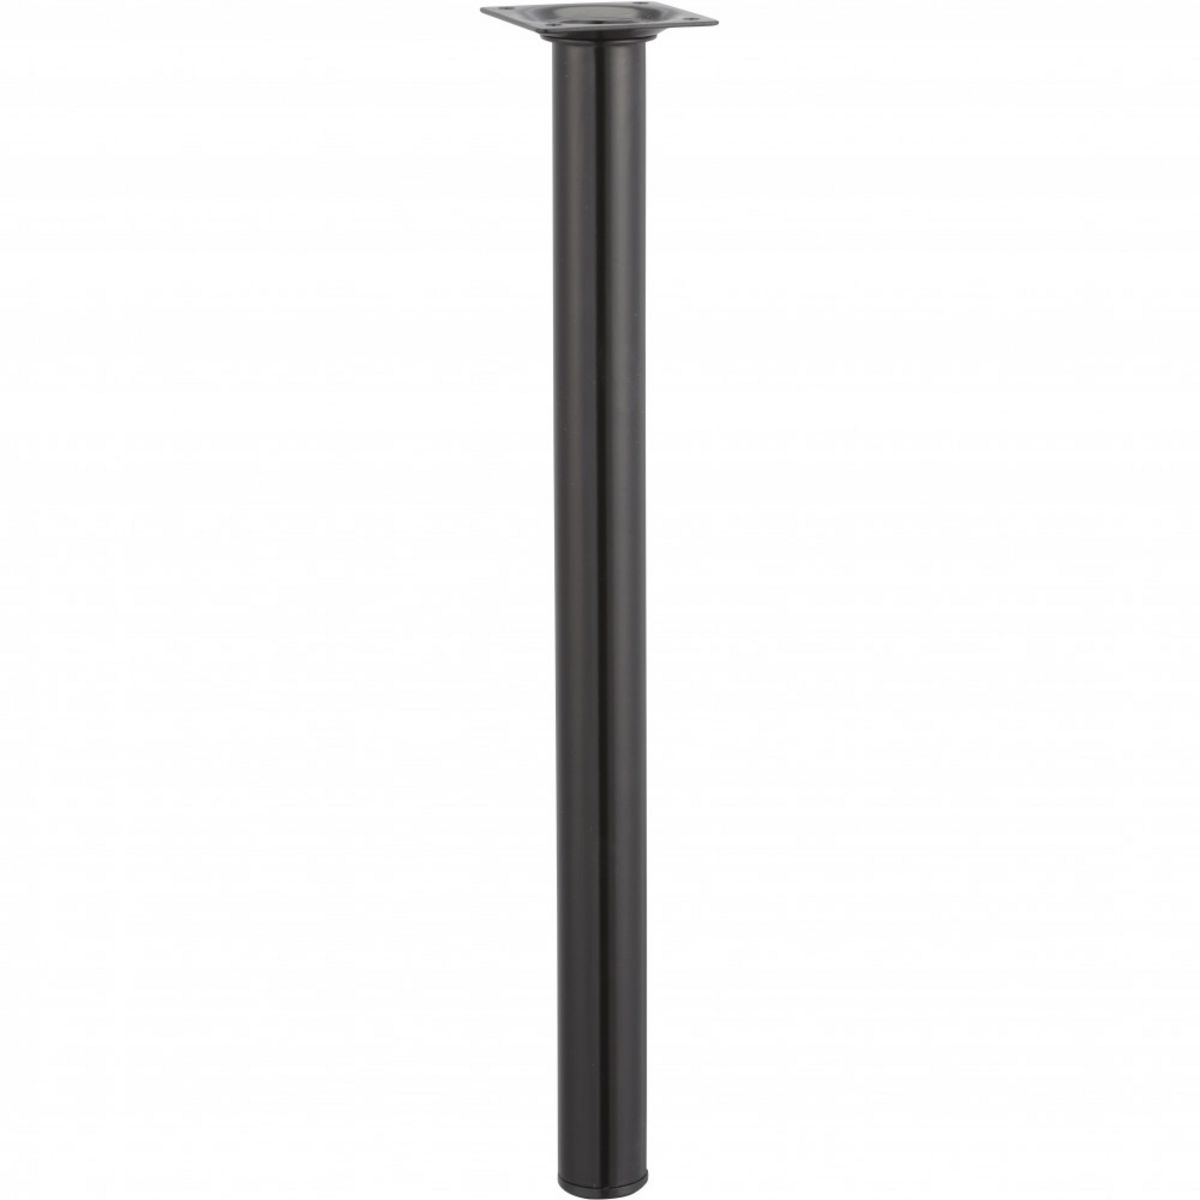 CENTRALE BRICO Pied de table basse cylindrique fixe acier époxy noir, 40 cm